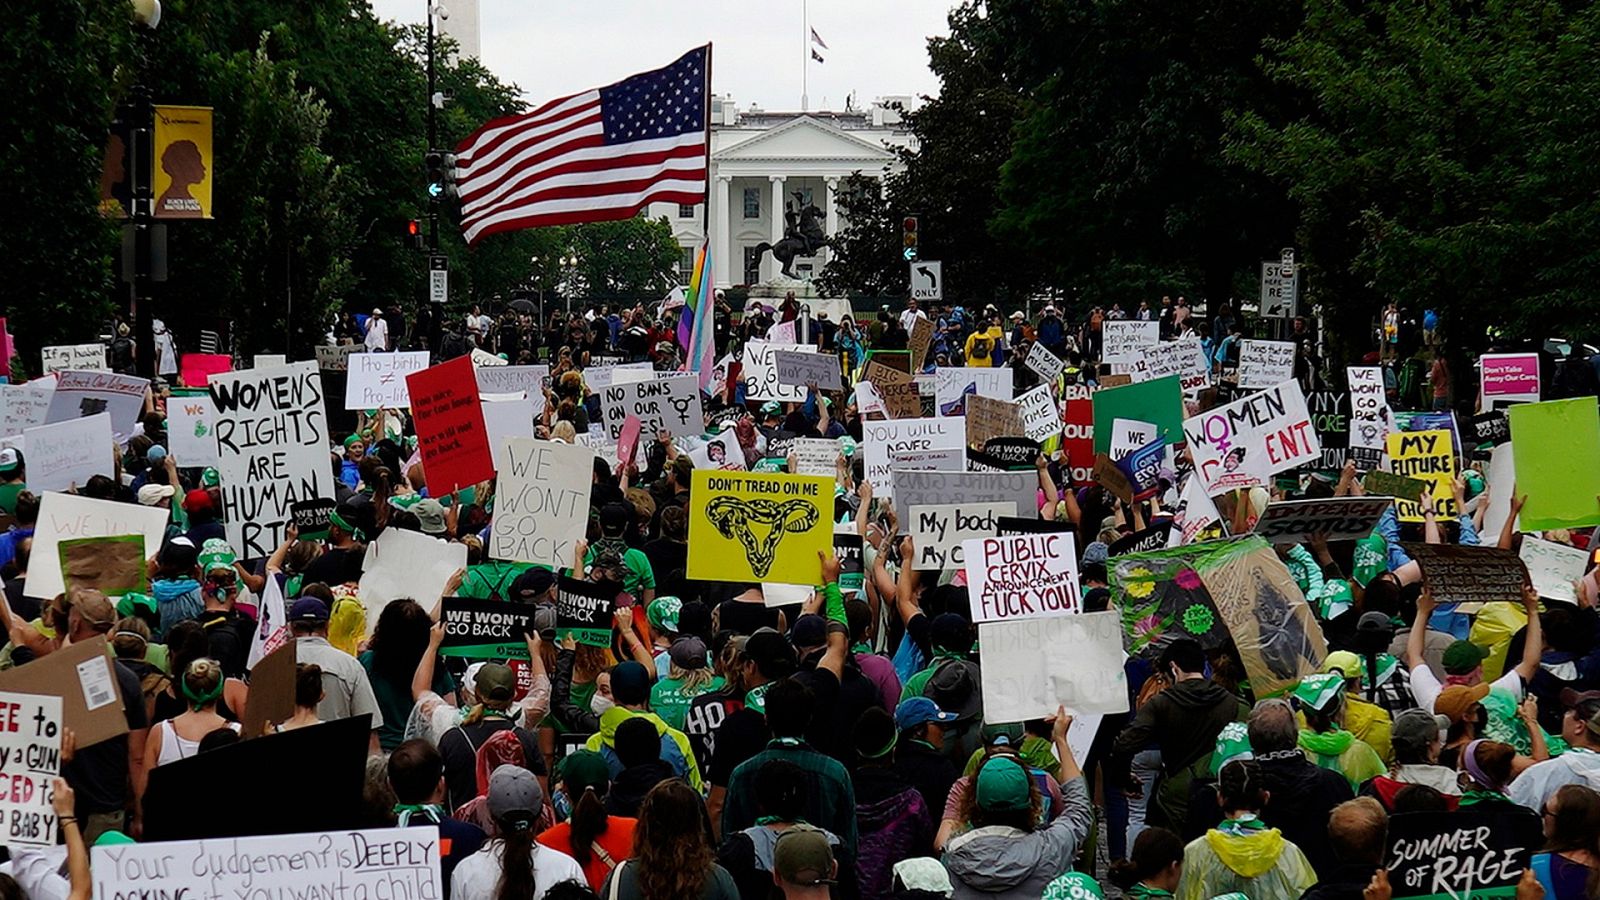 Una imagen de la manifestación frente a la Casa Blanca contra la decisión de Tribunal Supremo de Estados Unidos de derogar el derecho al aborto en el país.